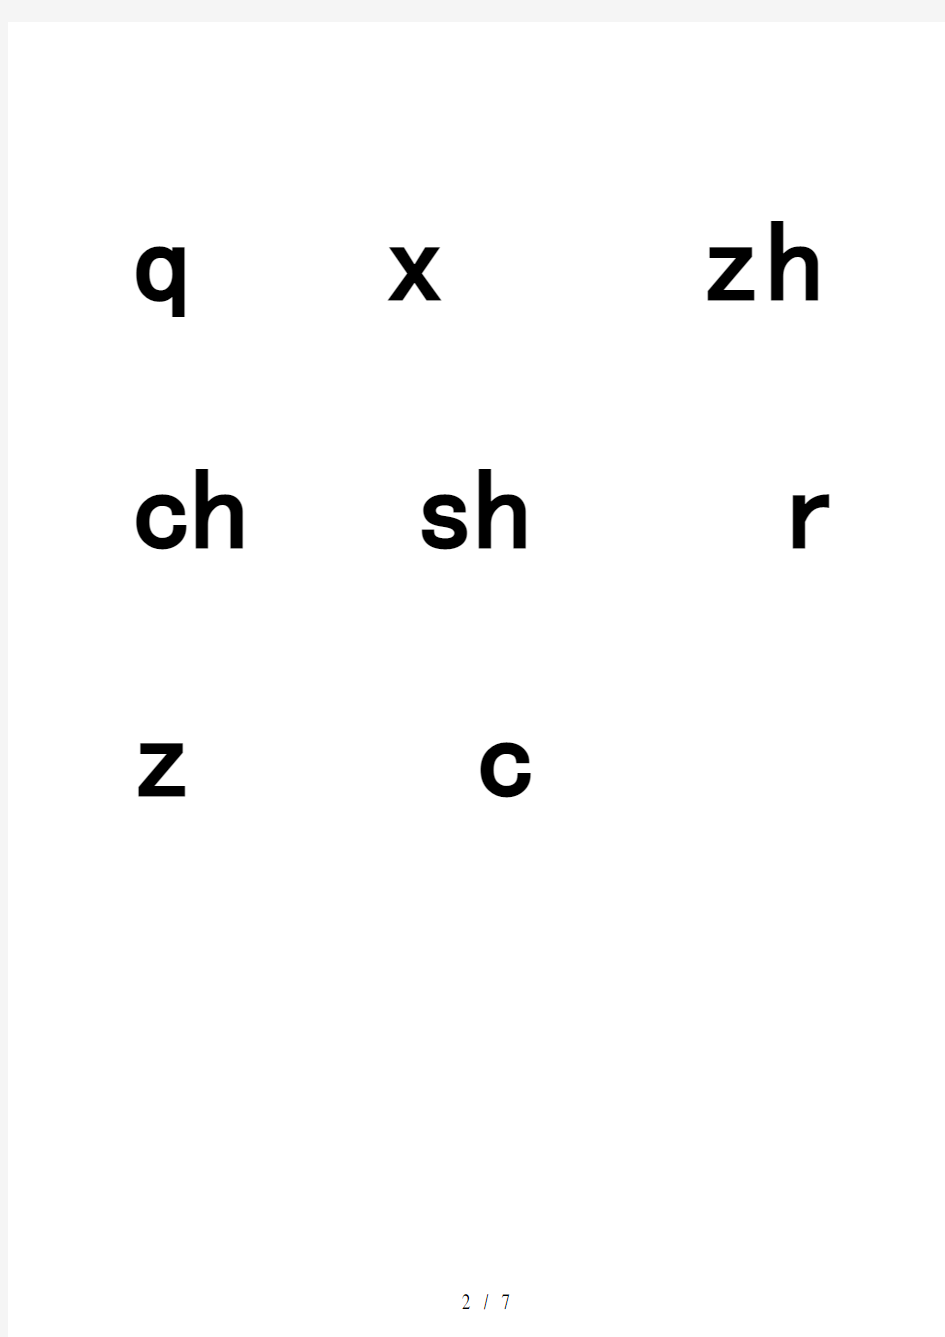 标准声母韵母整体认读音节打印版